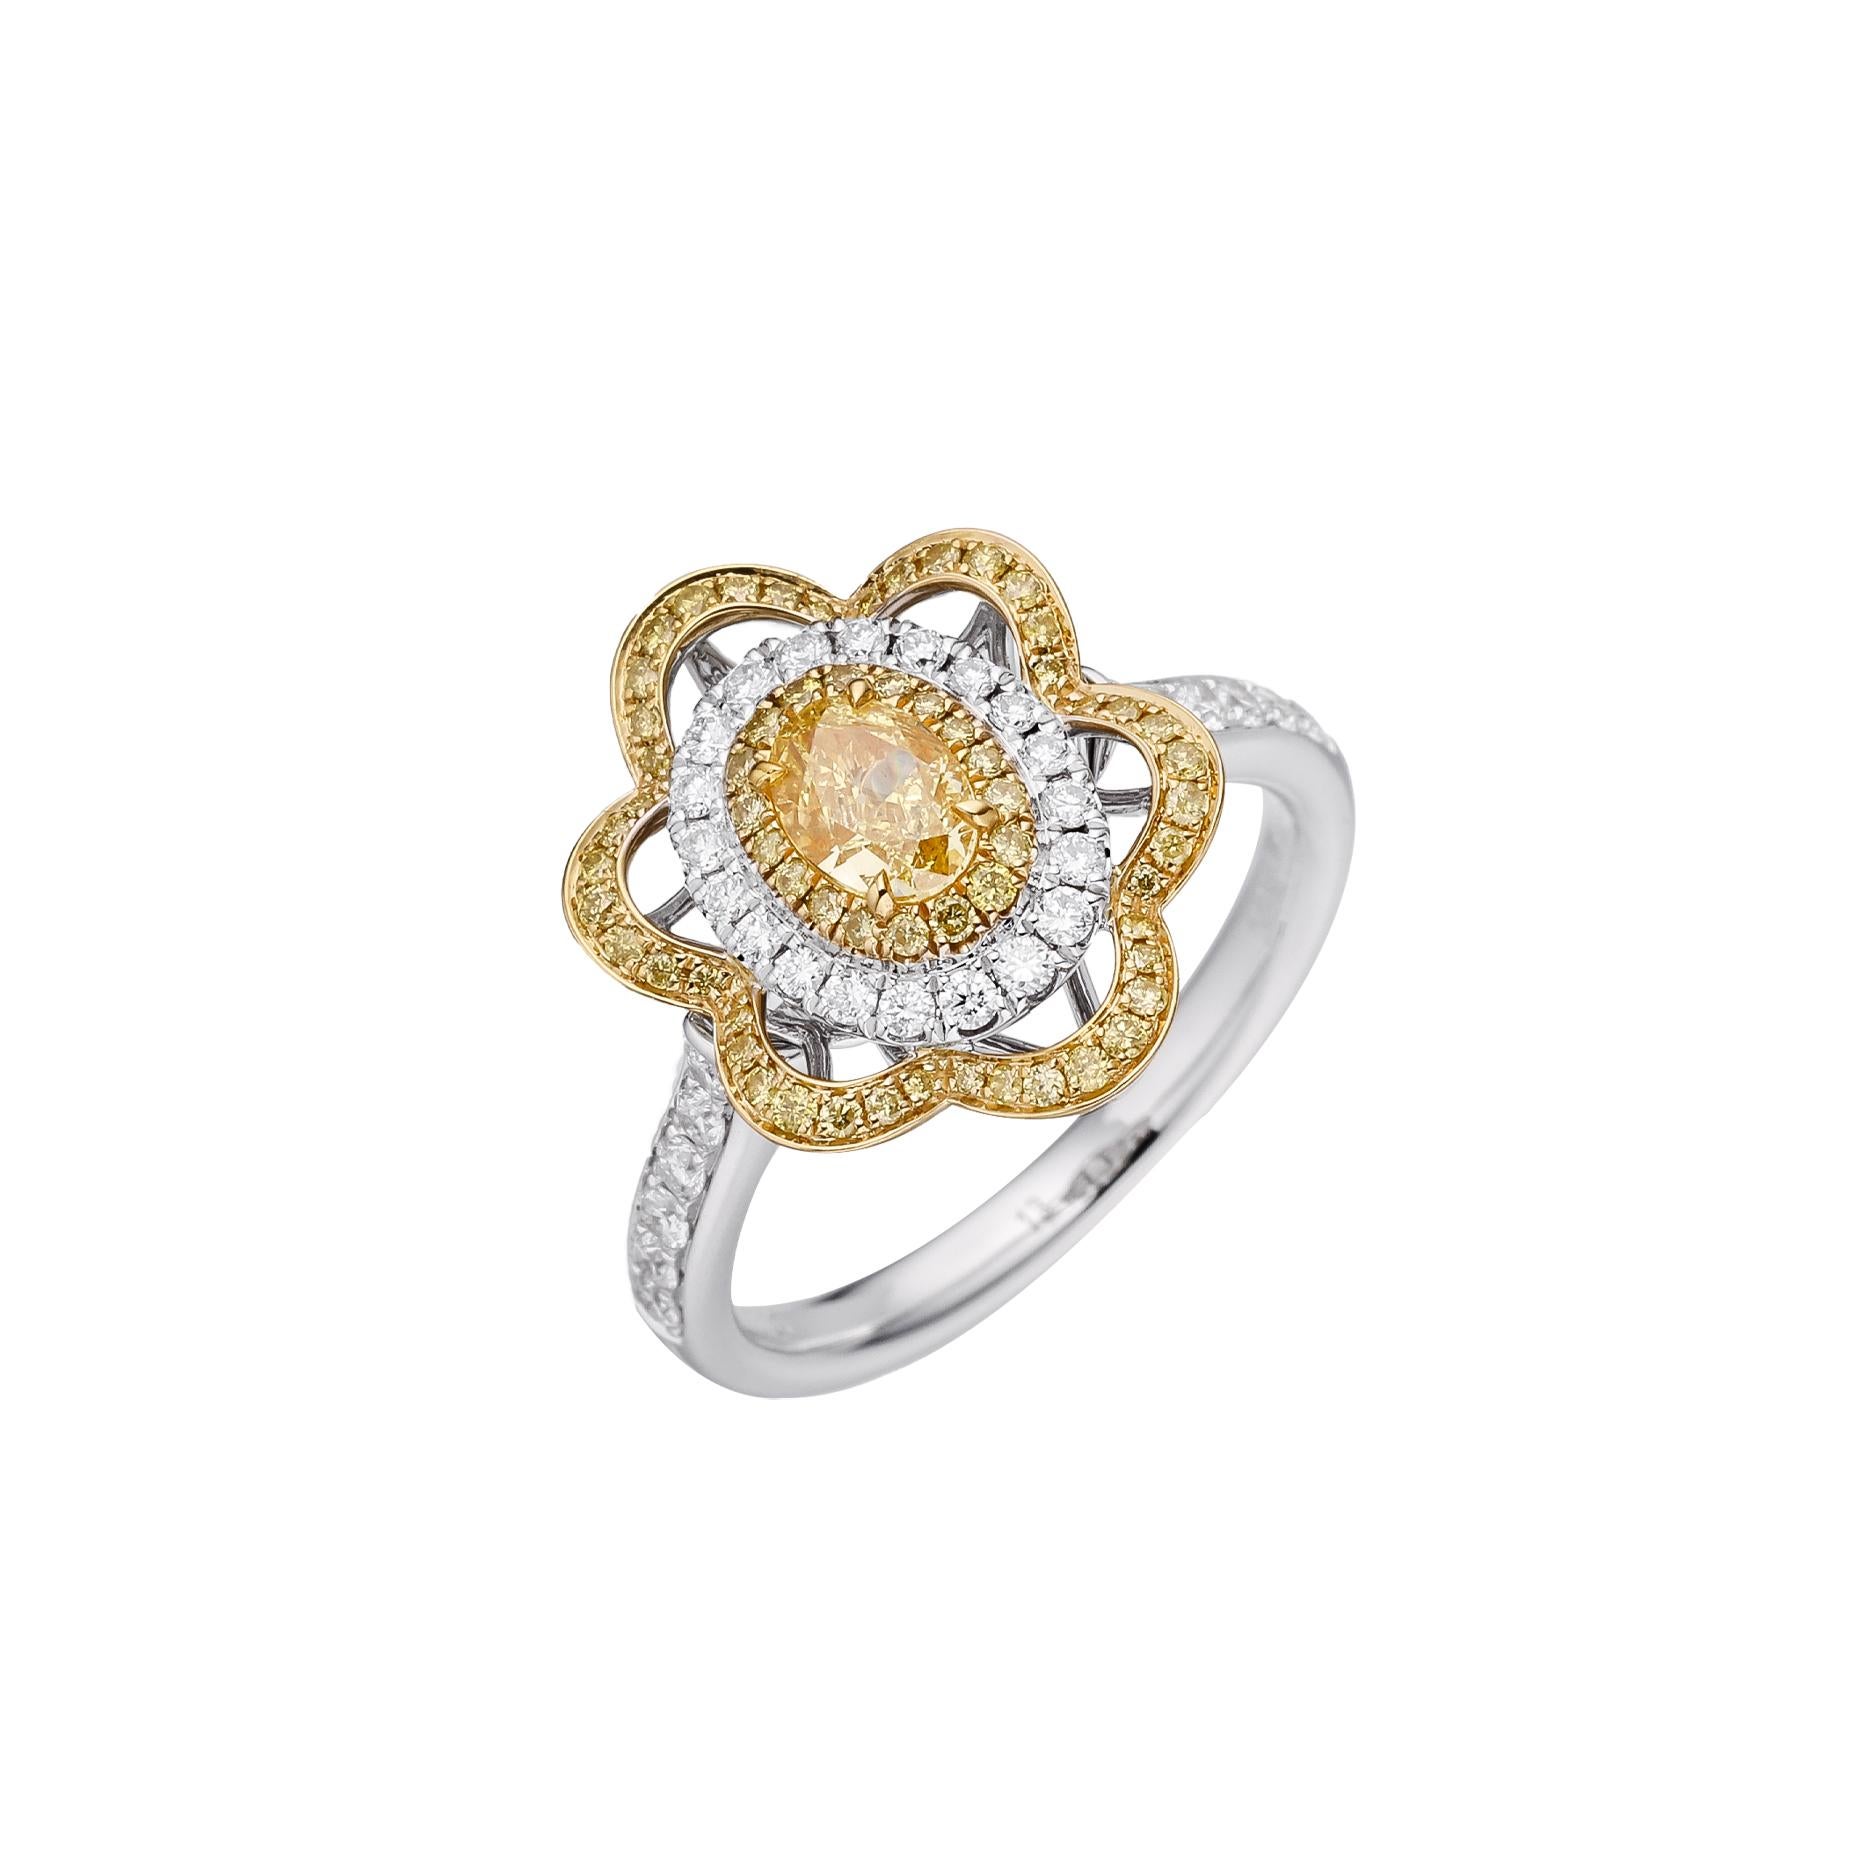 Erleben Sie den Inbegriff von Eleganz mit diesem exquisiten Schmuckstück mit einem GIA-zertifizierten, ovalen, intensiv gelben Naturdiamanten von 0,50 Karat, gefasst in einem glänzenden 18-karätigen Goldband. Der gelbe Diamant in der Mitte ist ein